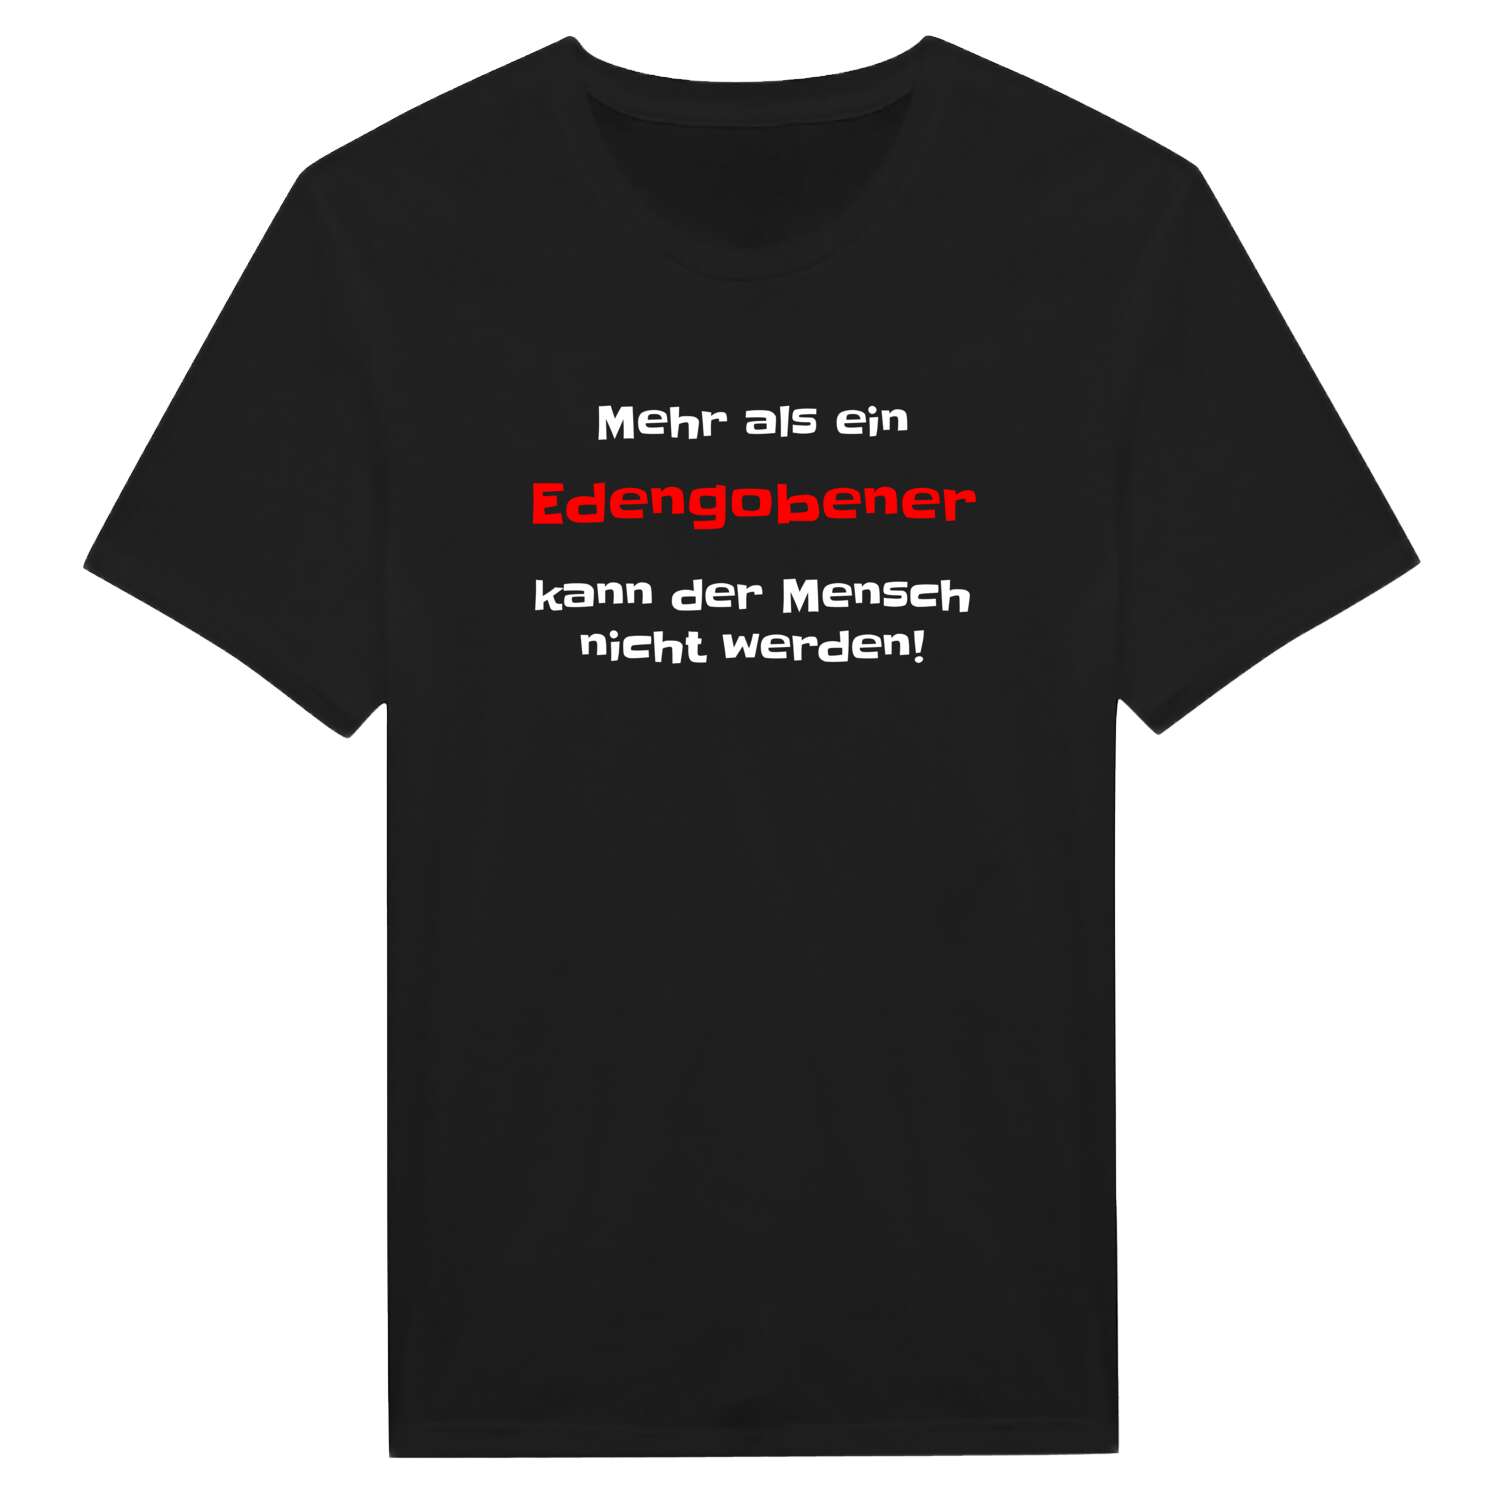 Edengoben T-Shirt »Mehr als ein«